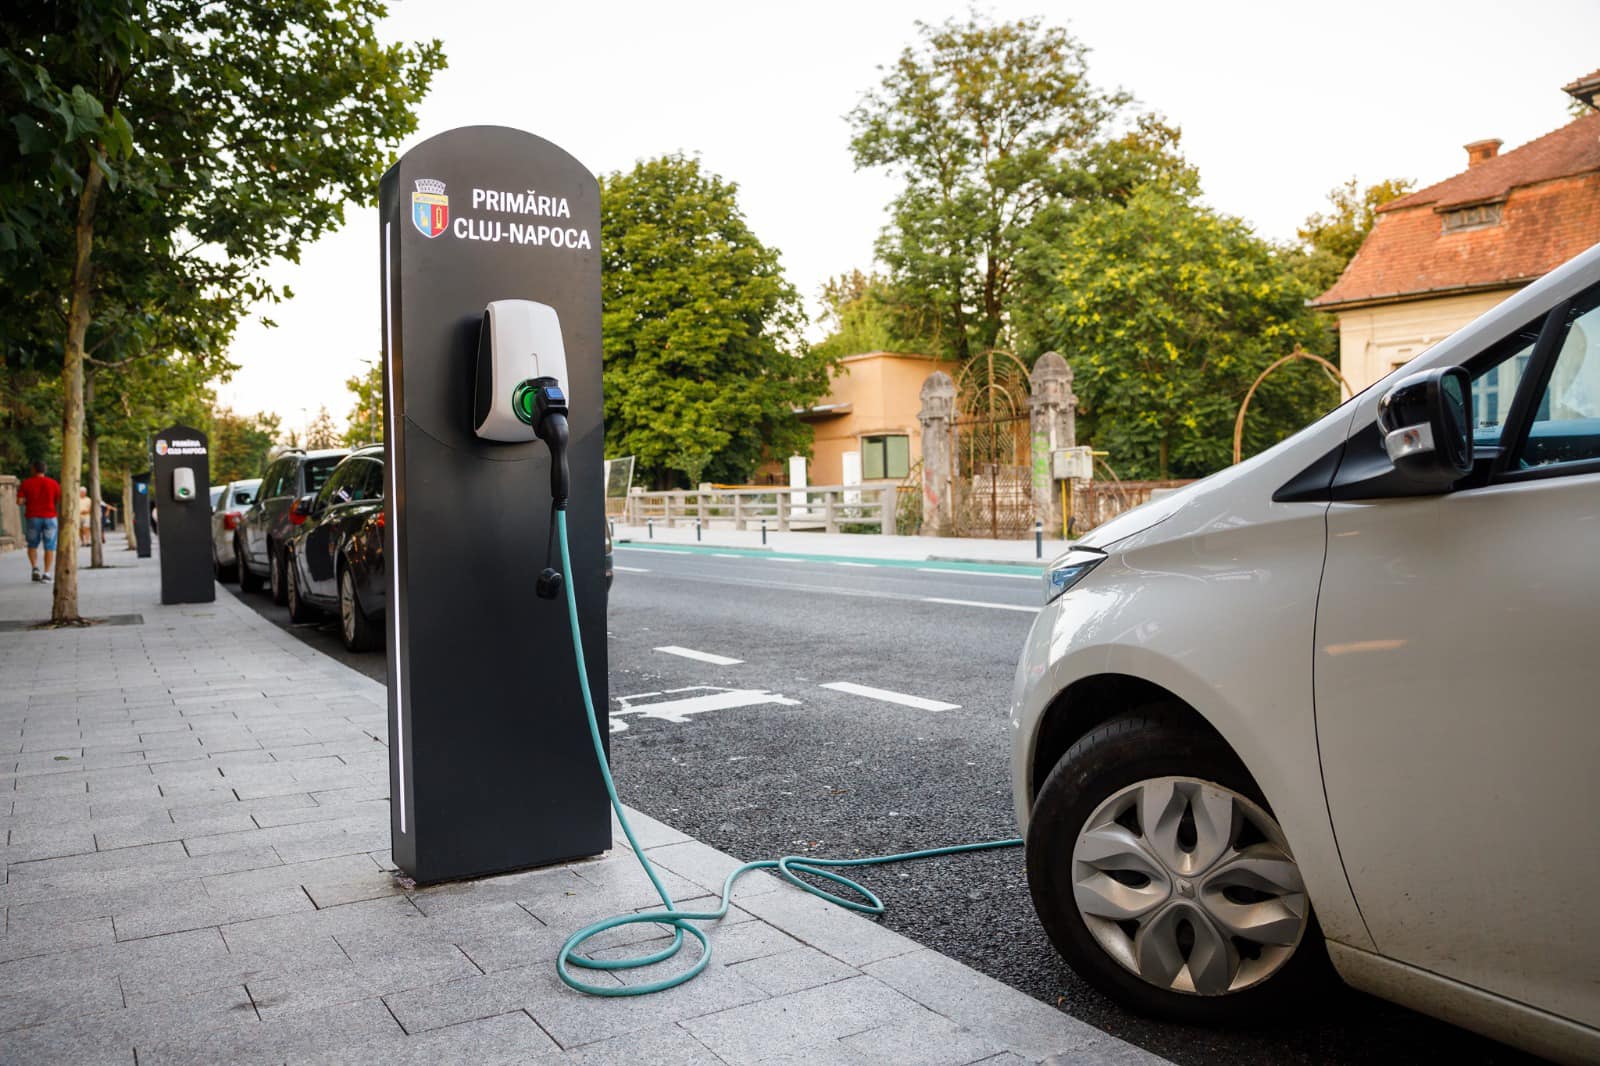 Șoferii clujeni vor plăti pentru încărcarea mașinilor electrice la stațiile Primăriei / Foto: Emil Boc - Facebook